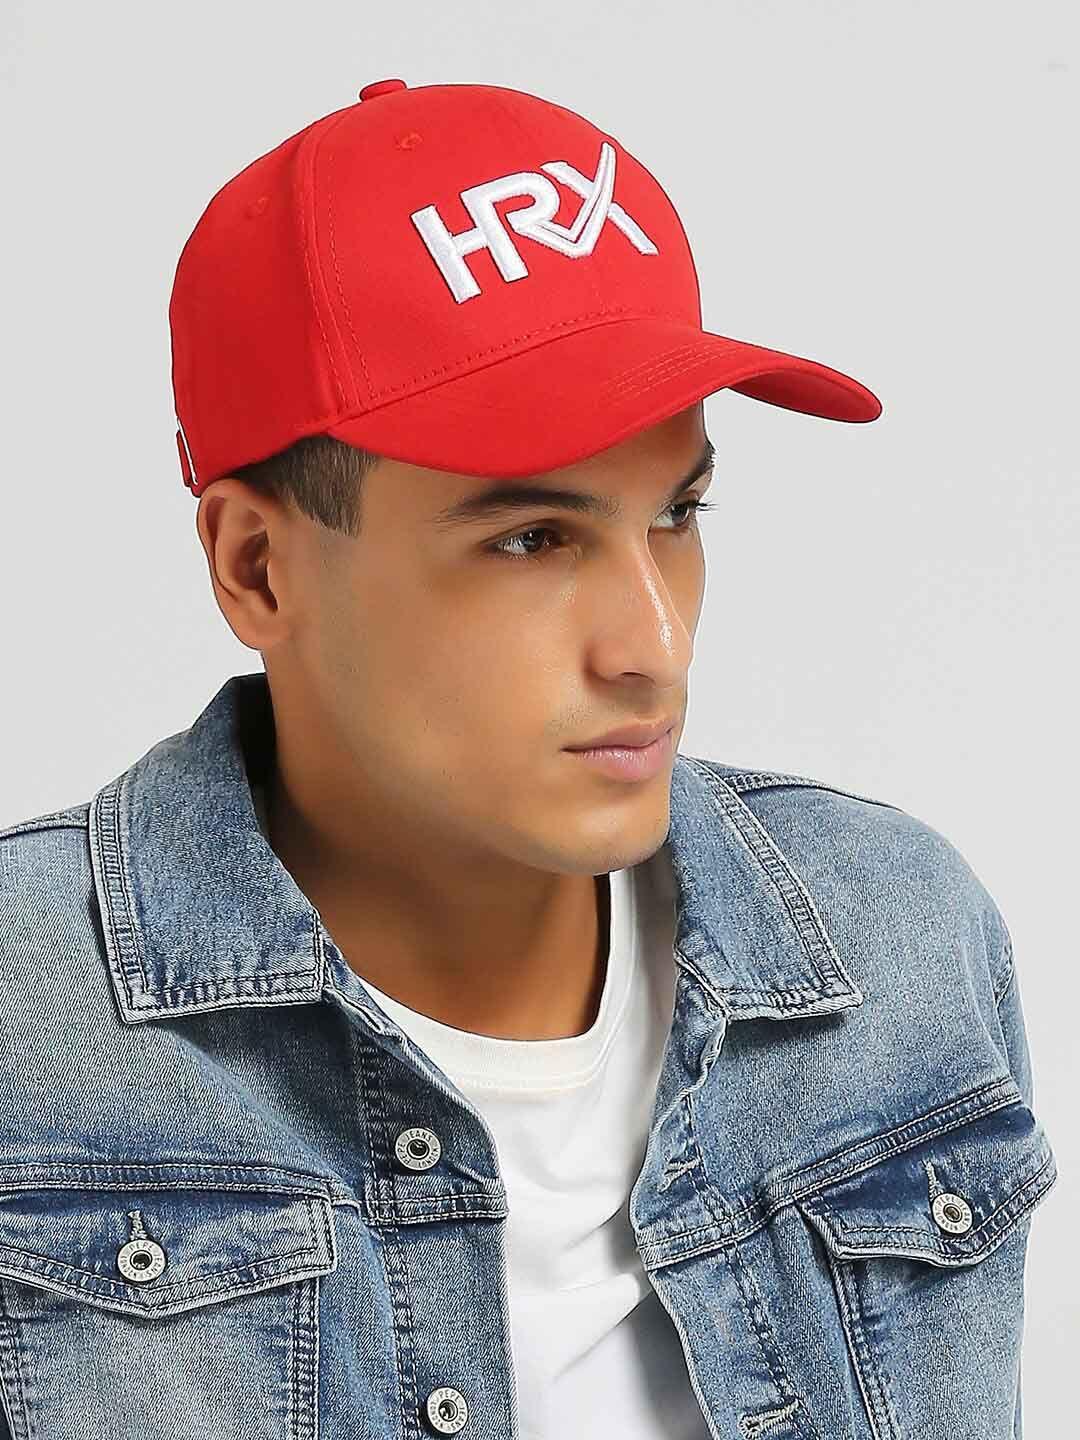 hrx by hrithik roshan men embroidered baseball cap